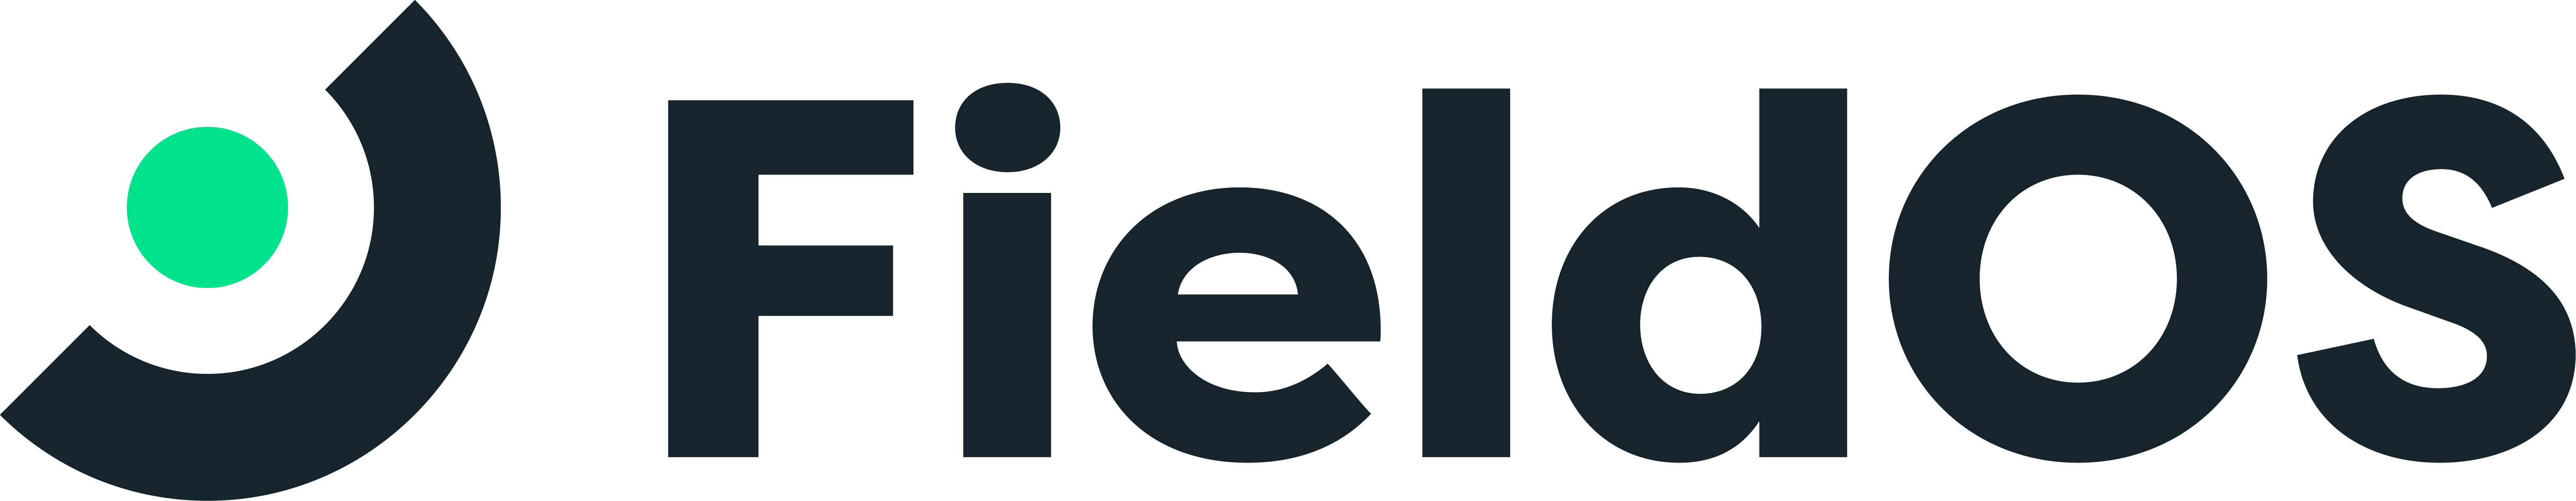 FieldOS logo